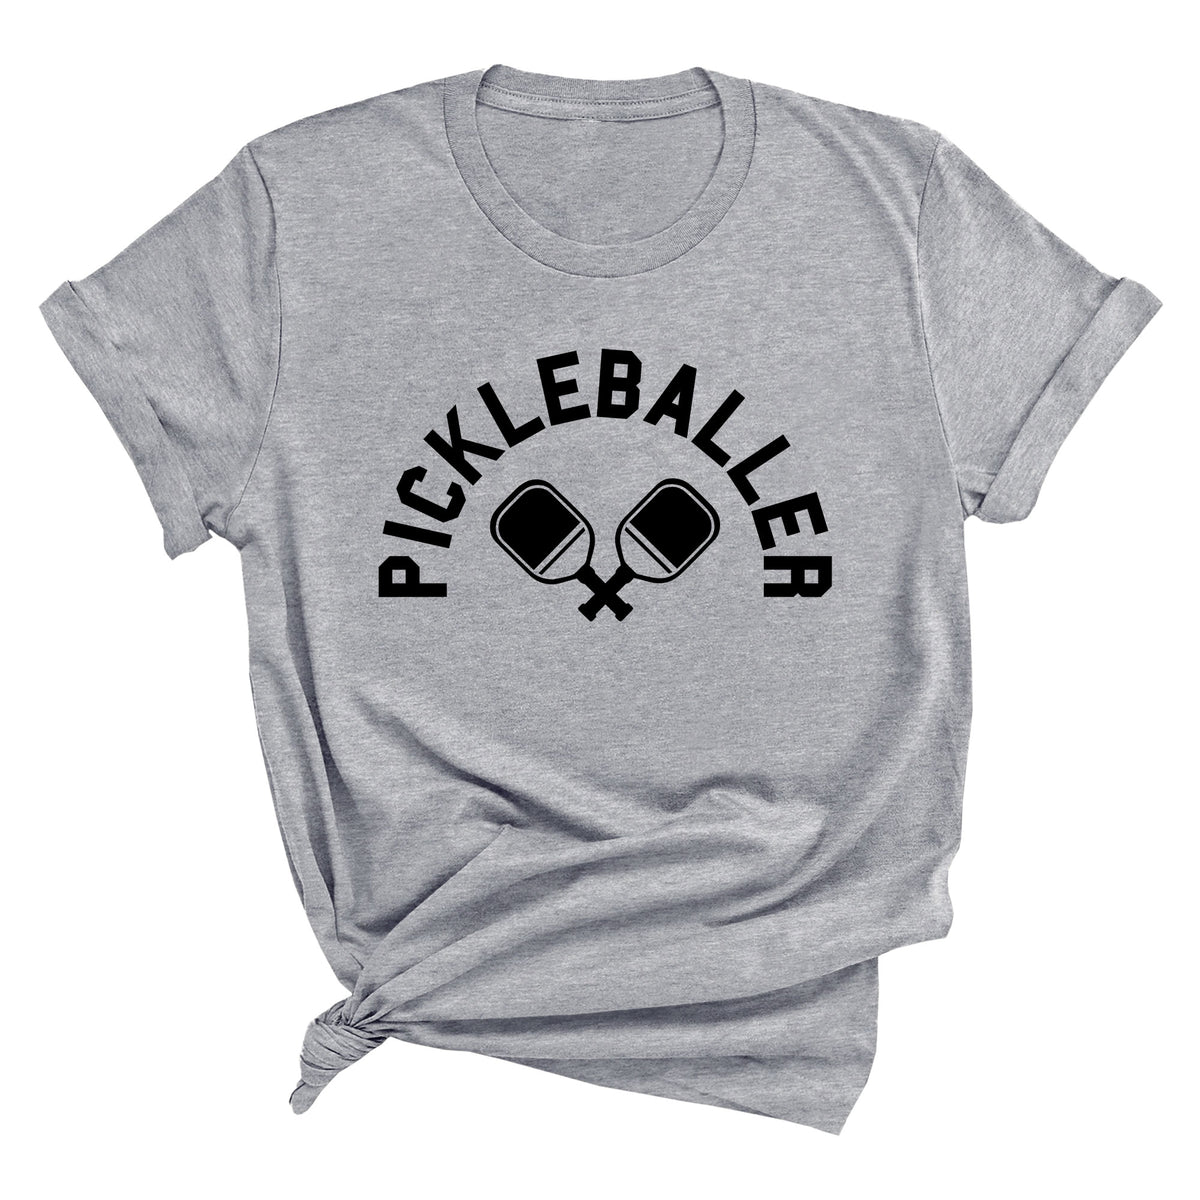 Pickleballer with Paddles Unisex T-Shirt